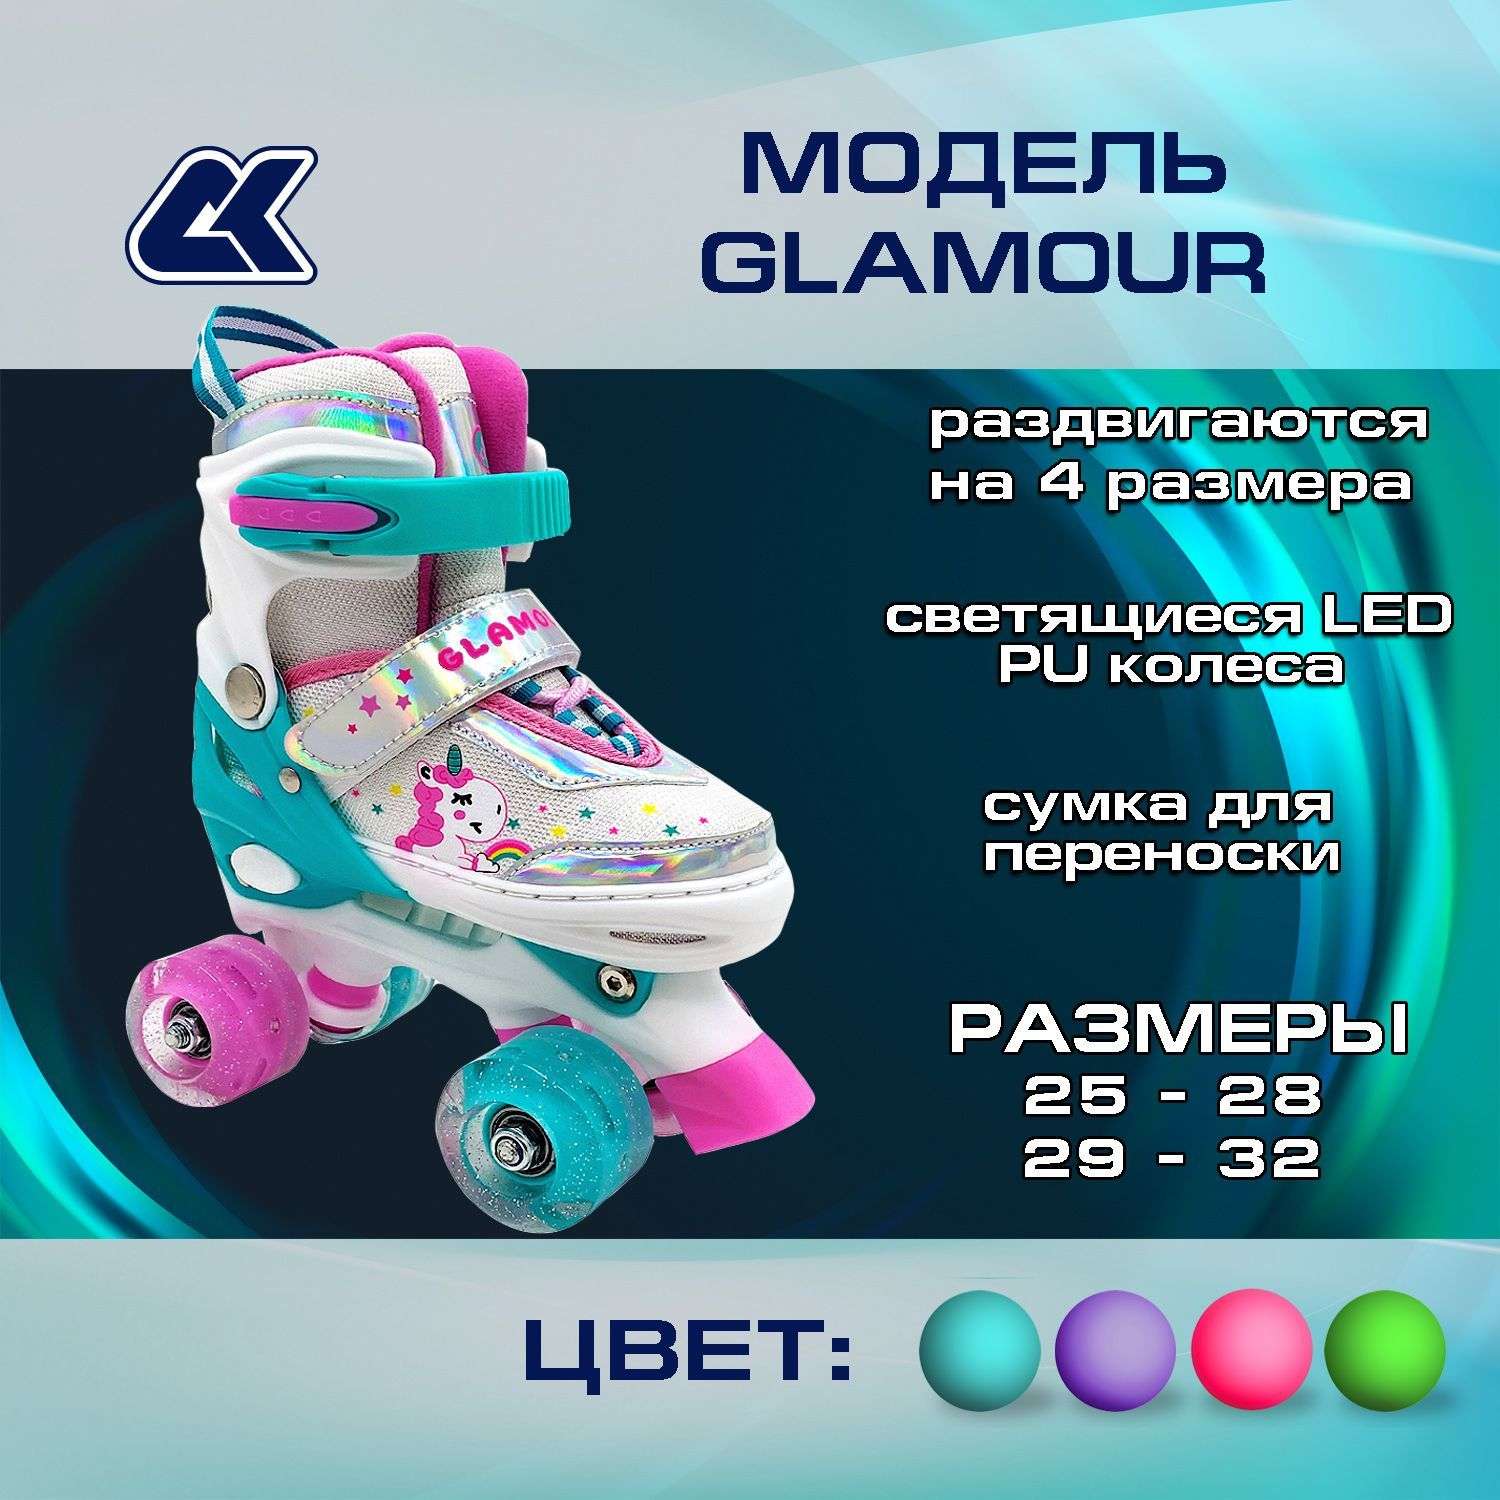 Раздвижные роликовые коньки Sport Collection КВАДЫ GLAMOUR mint с LED подсветкой колес M 33-36 - фото 2